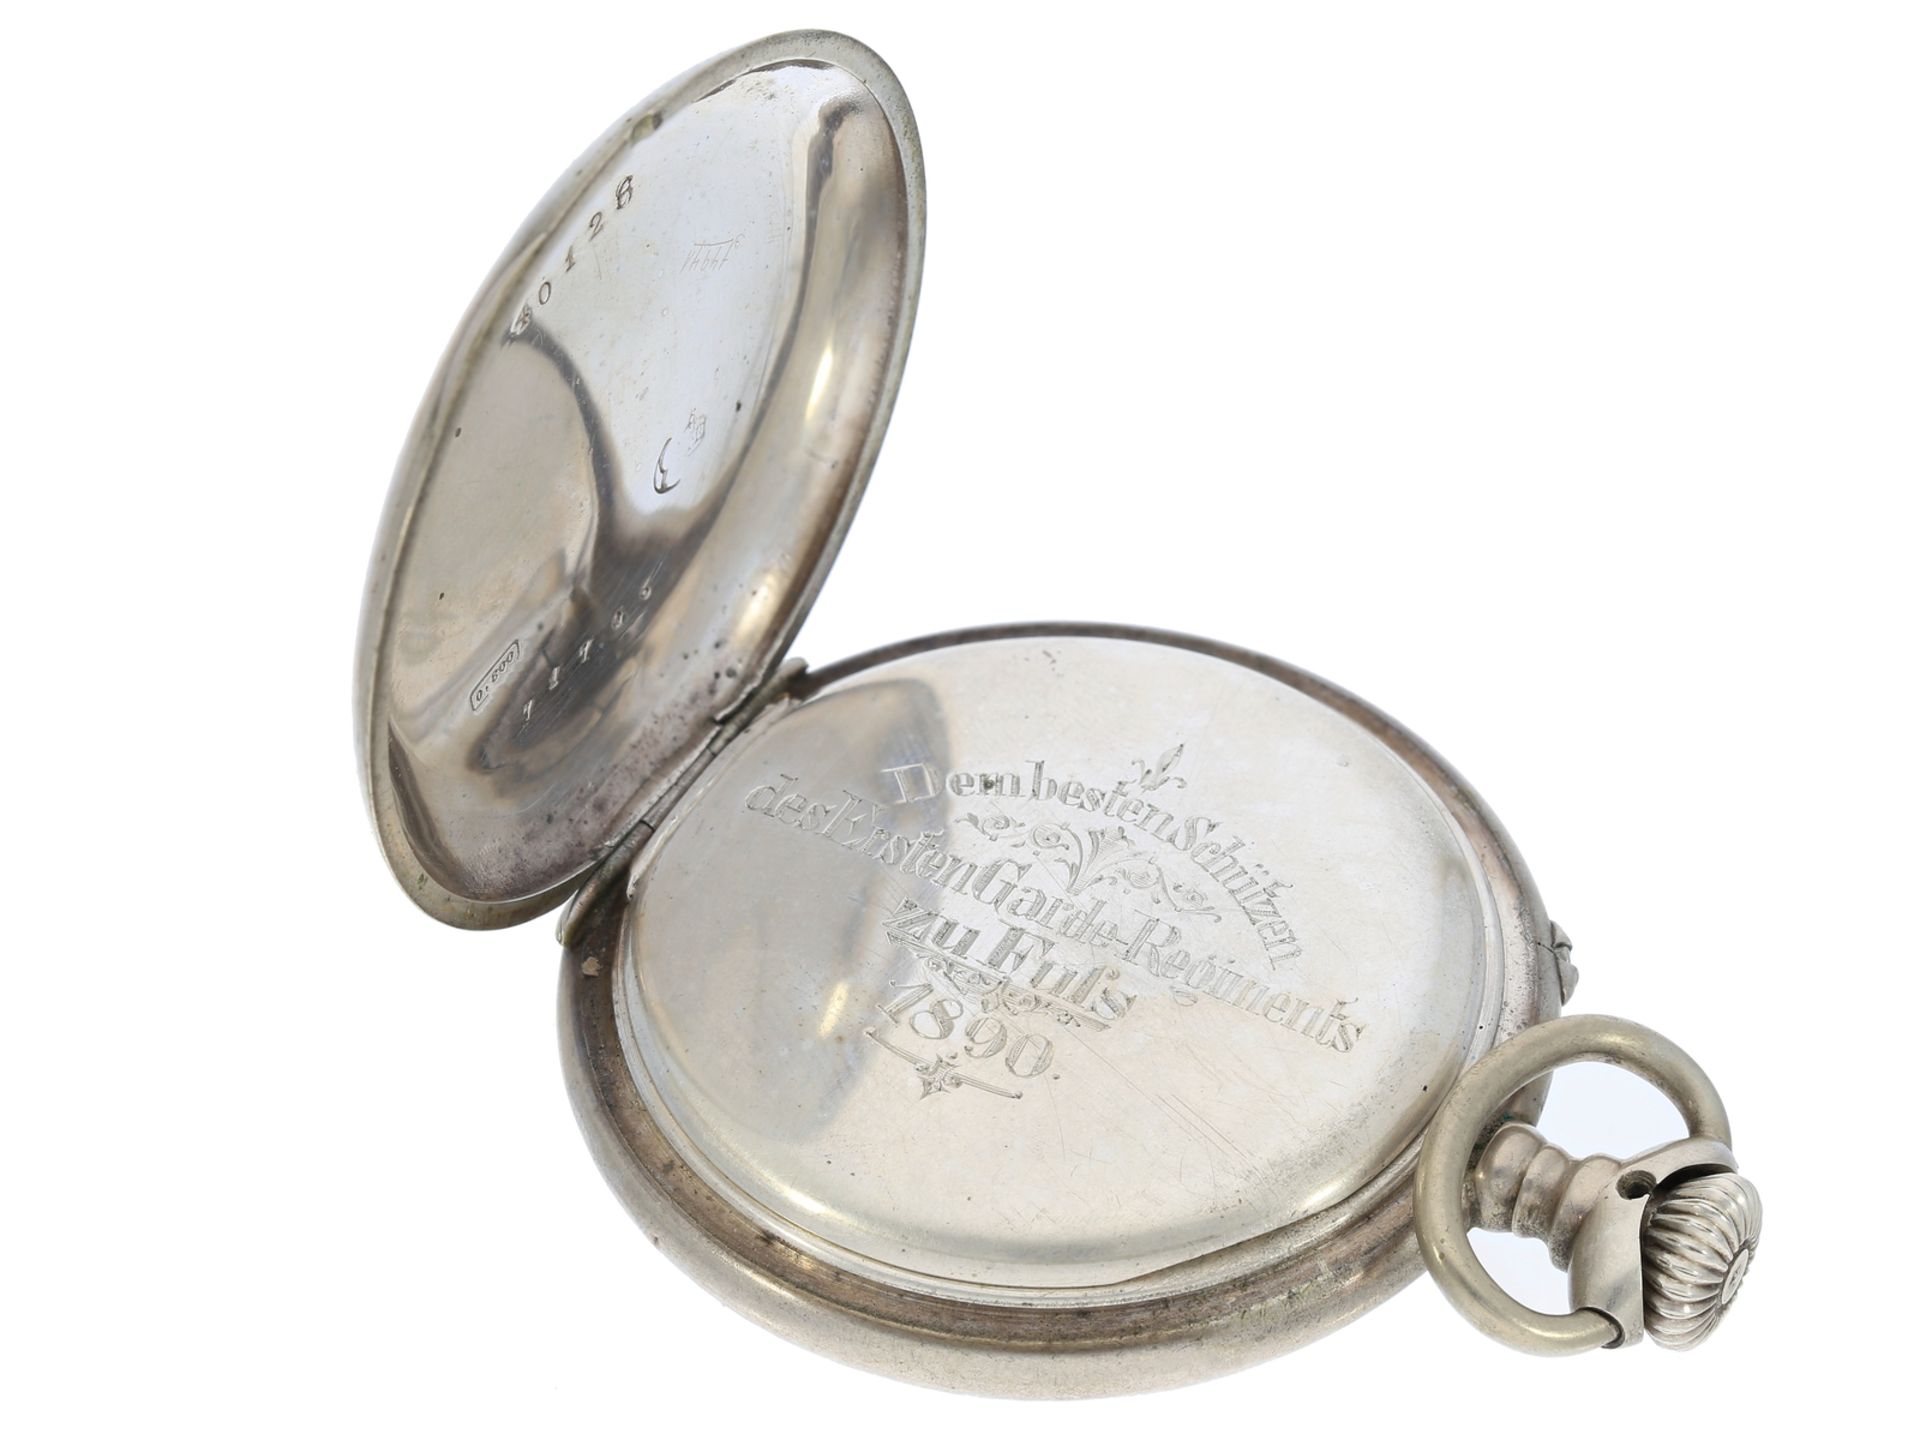 Taschenuhr: kaiserliche Präsent-Uhr mit originaler Schatulle, Gebrüder Eppner Berlin 1890 - Bild 3 aus 5